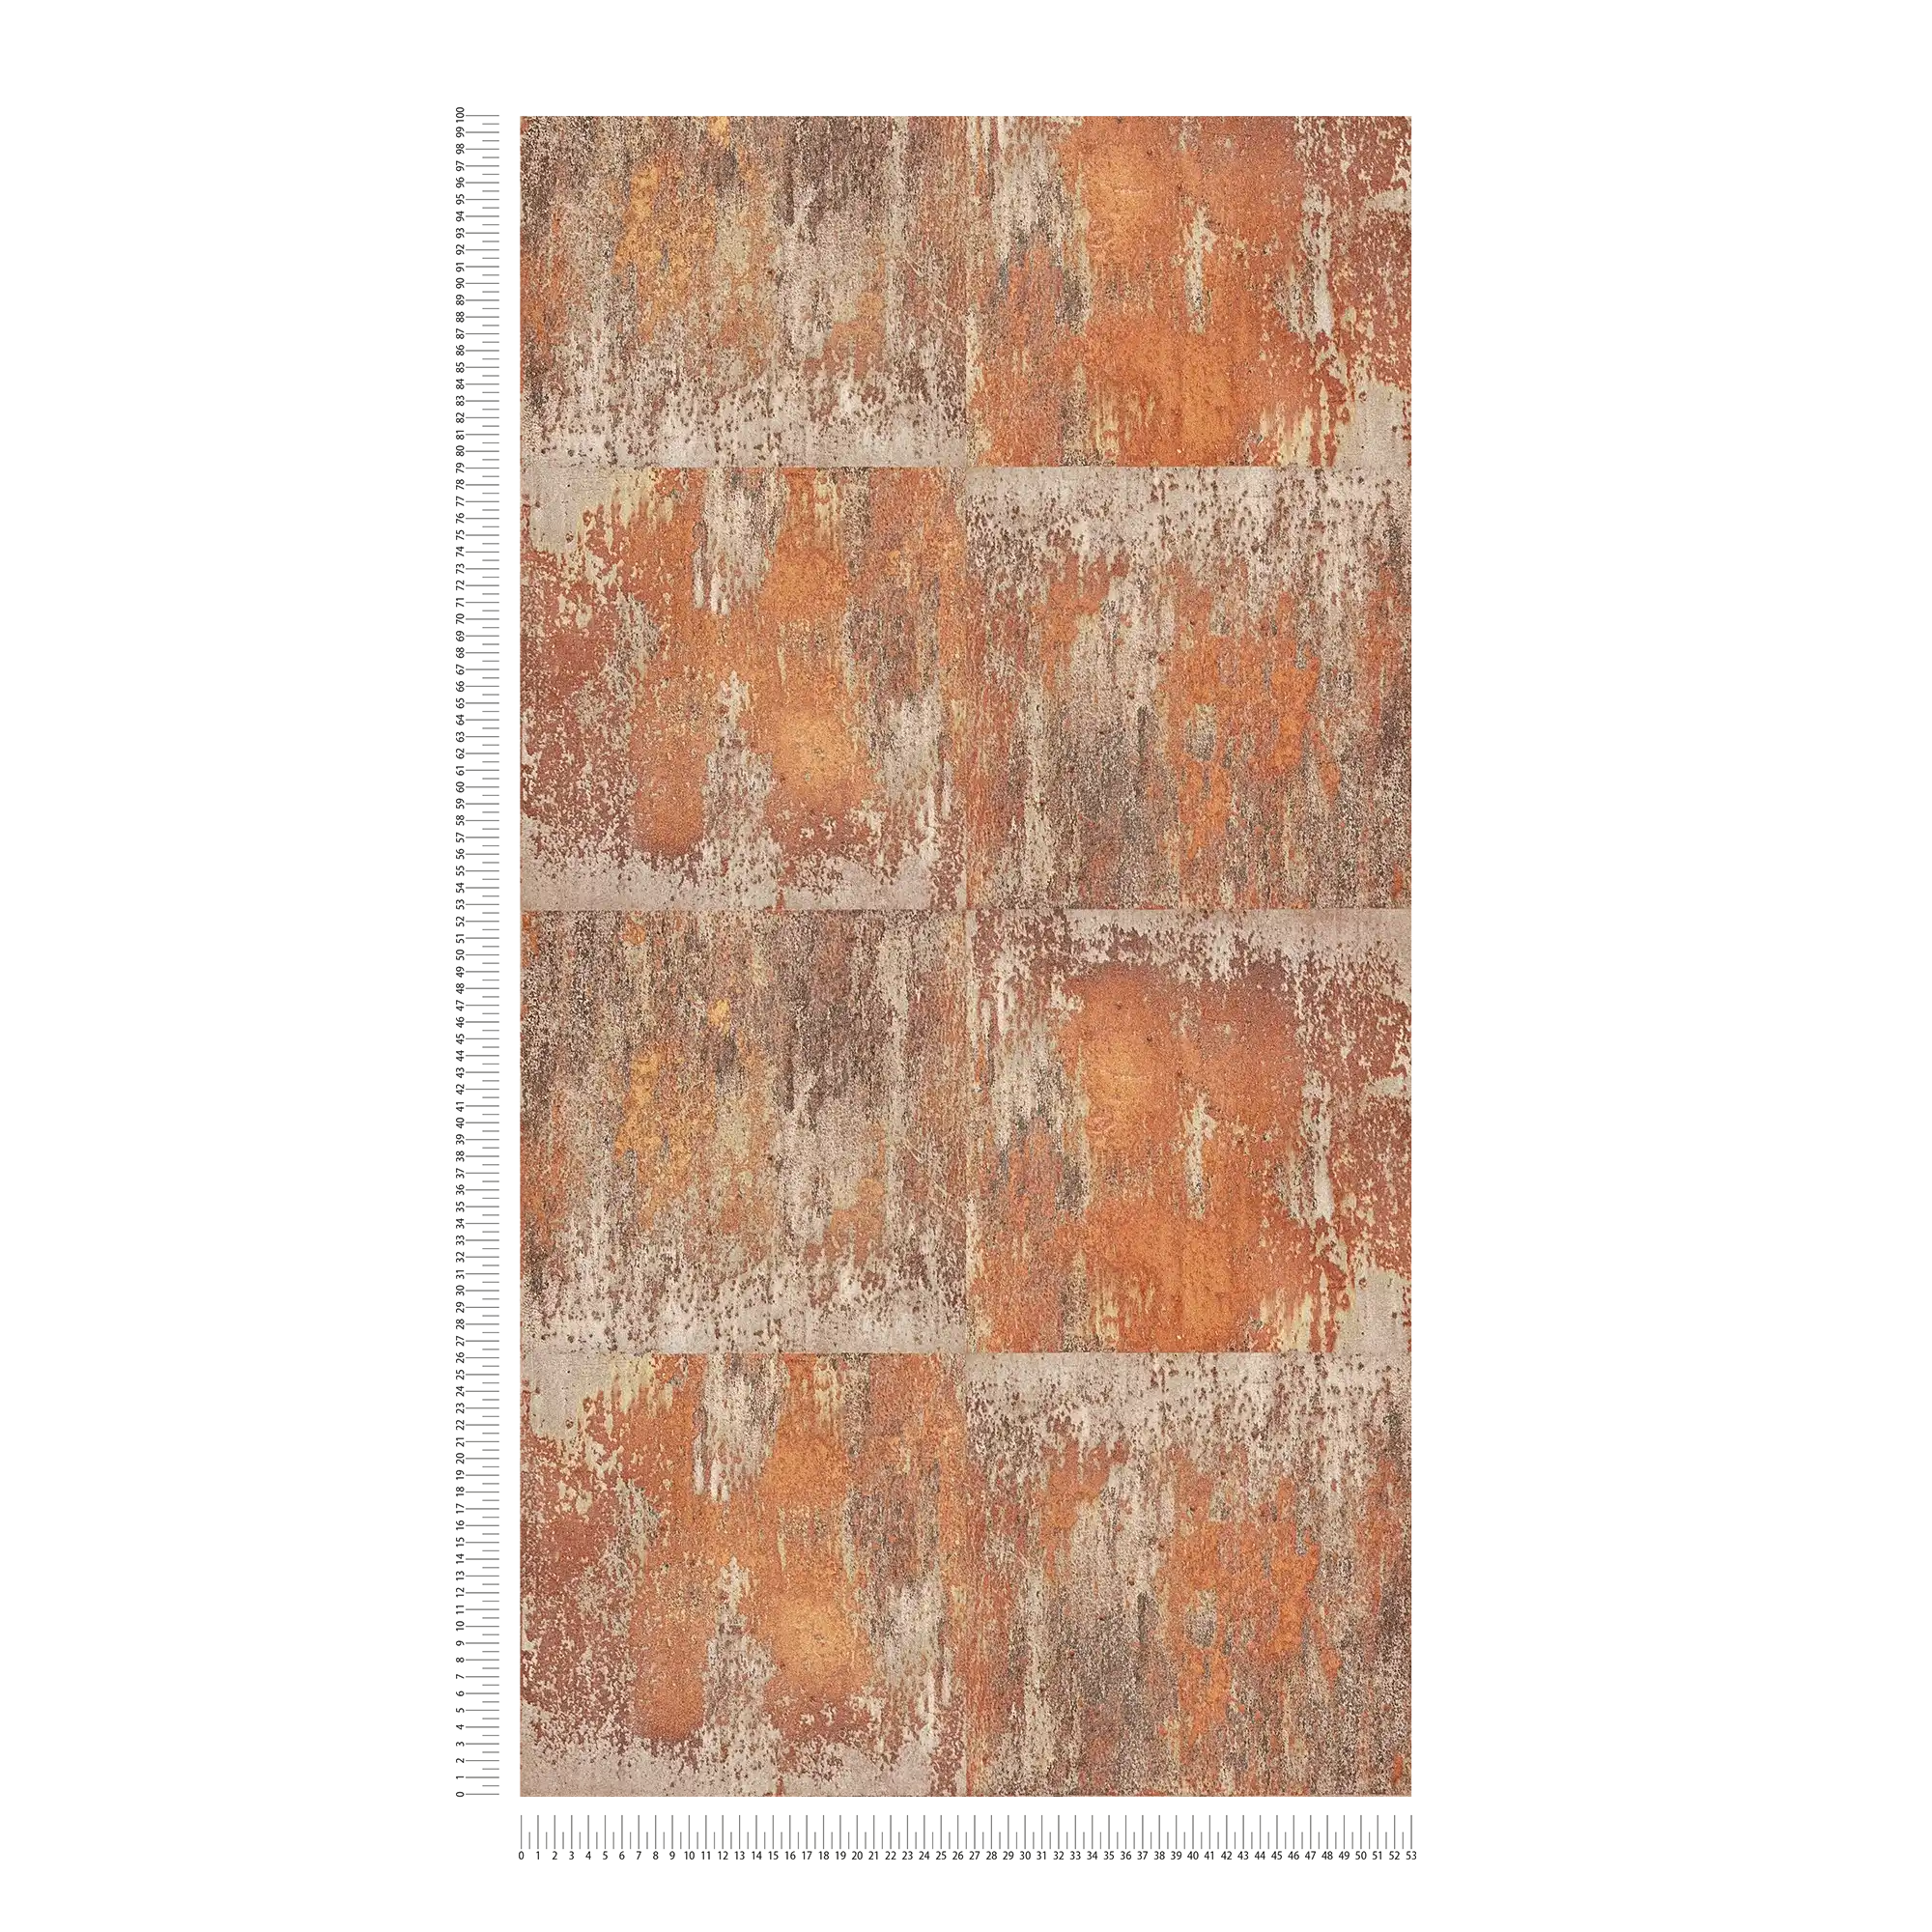             Vliestapete Patina-Design mit Rost und Kupfereffekten – Orange, Braun, Kupfer
        